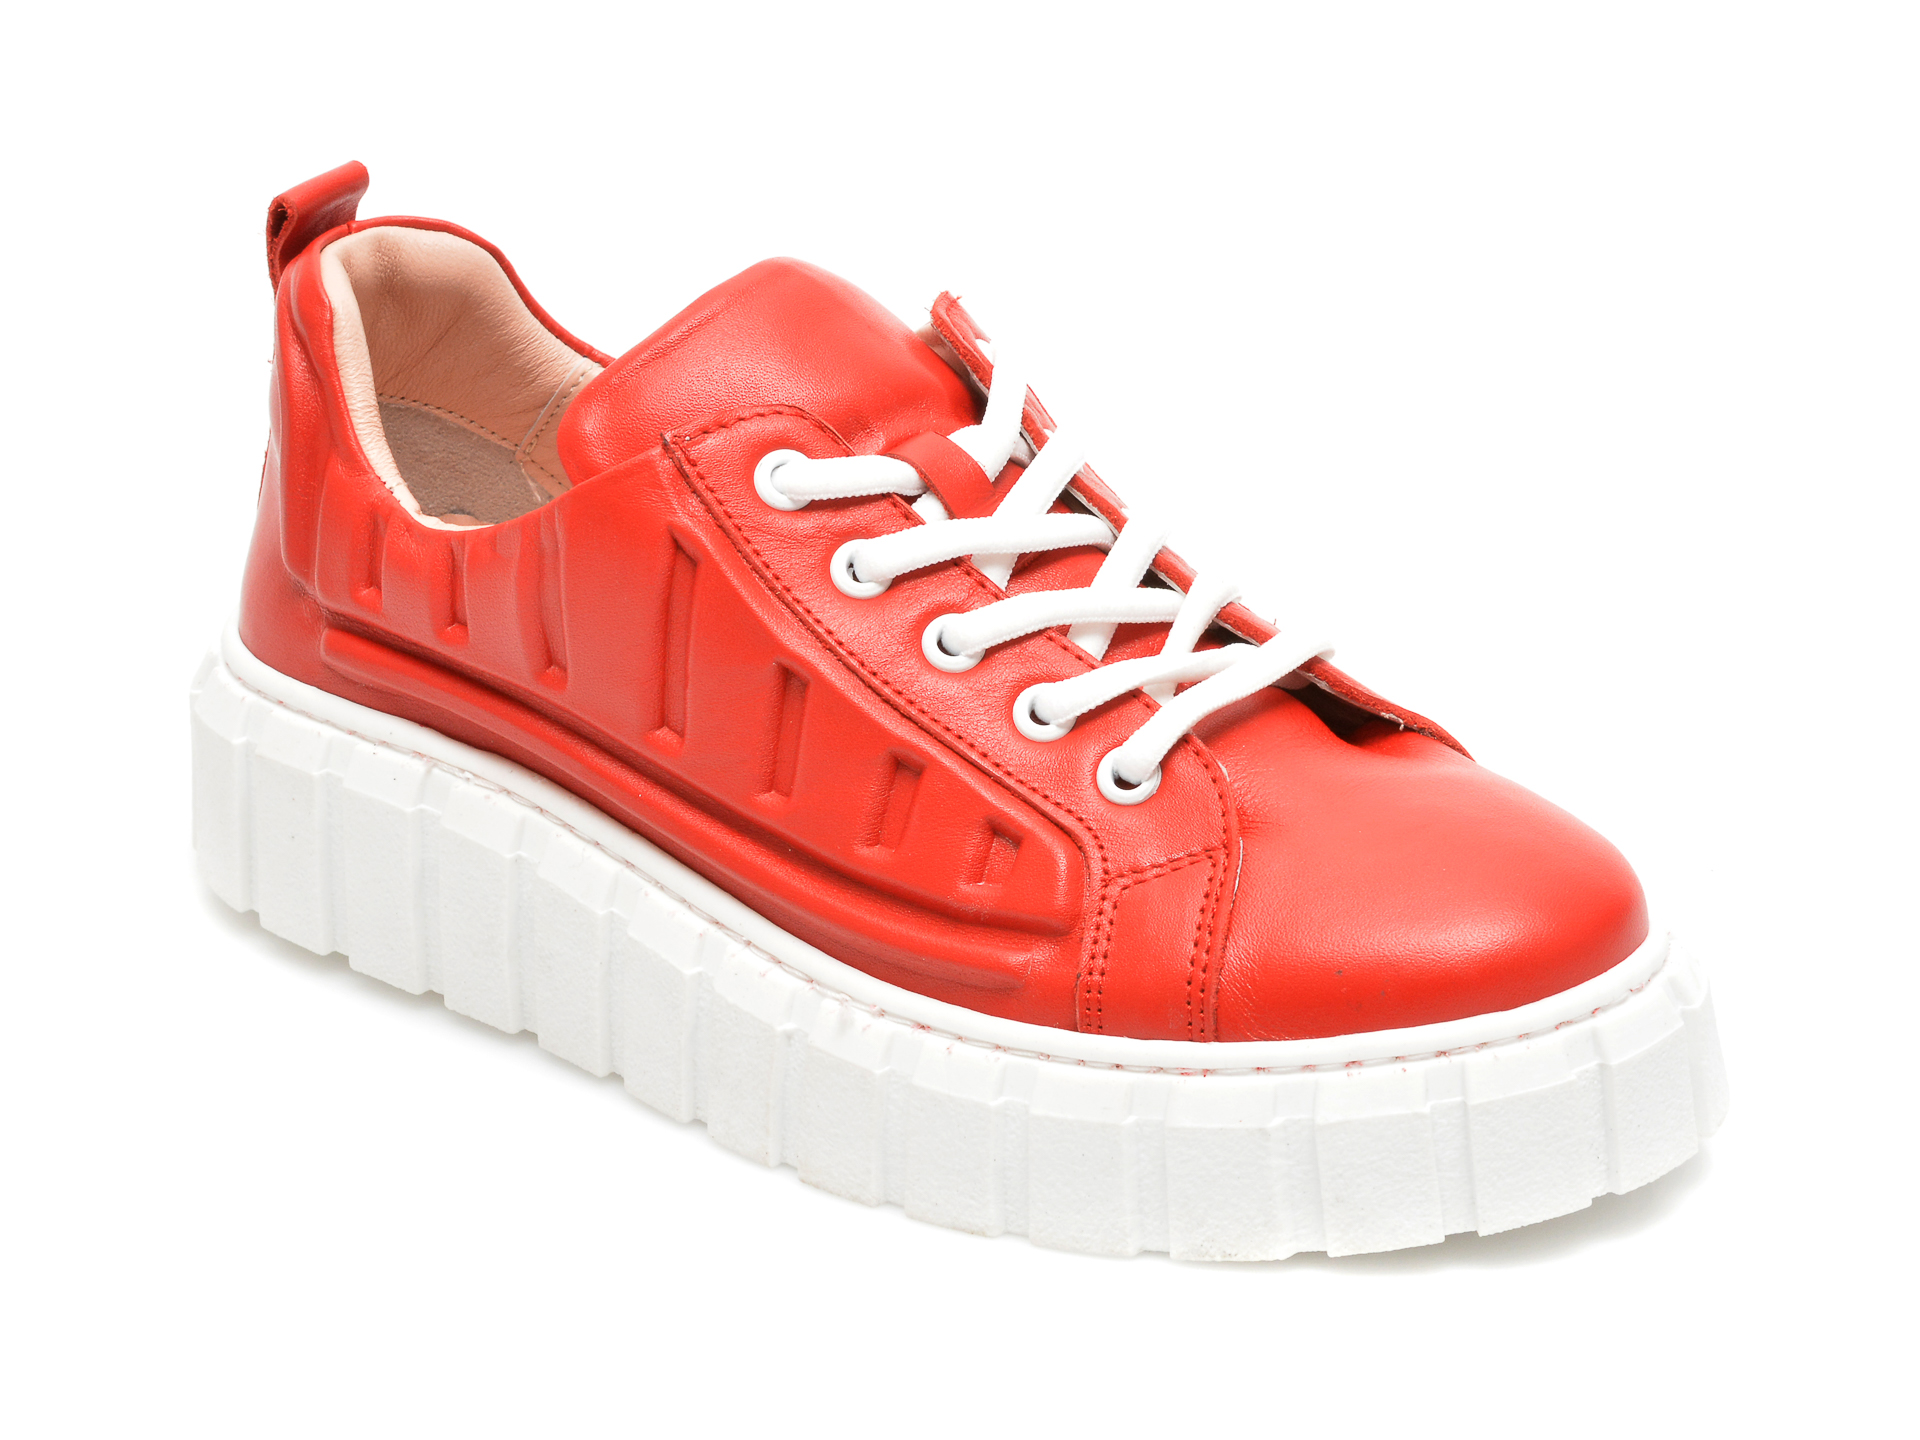 Pantofi FLAVIA PASSINI rosii, 922502, din piele naturala Flavia Passini imagine reduceri